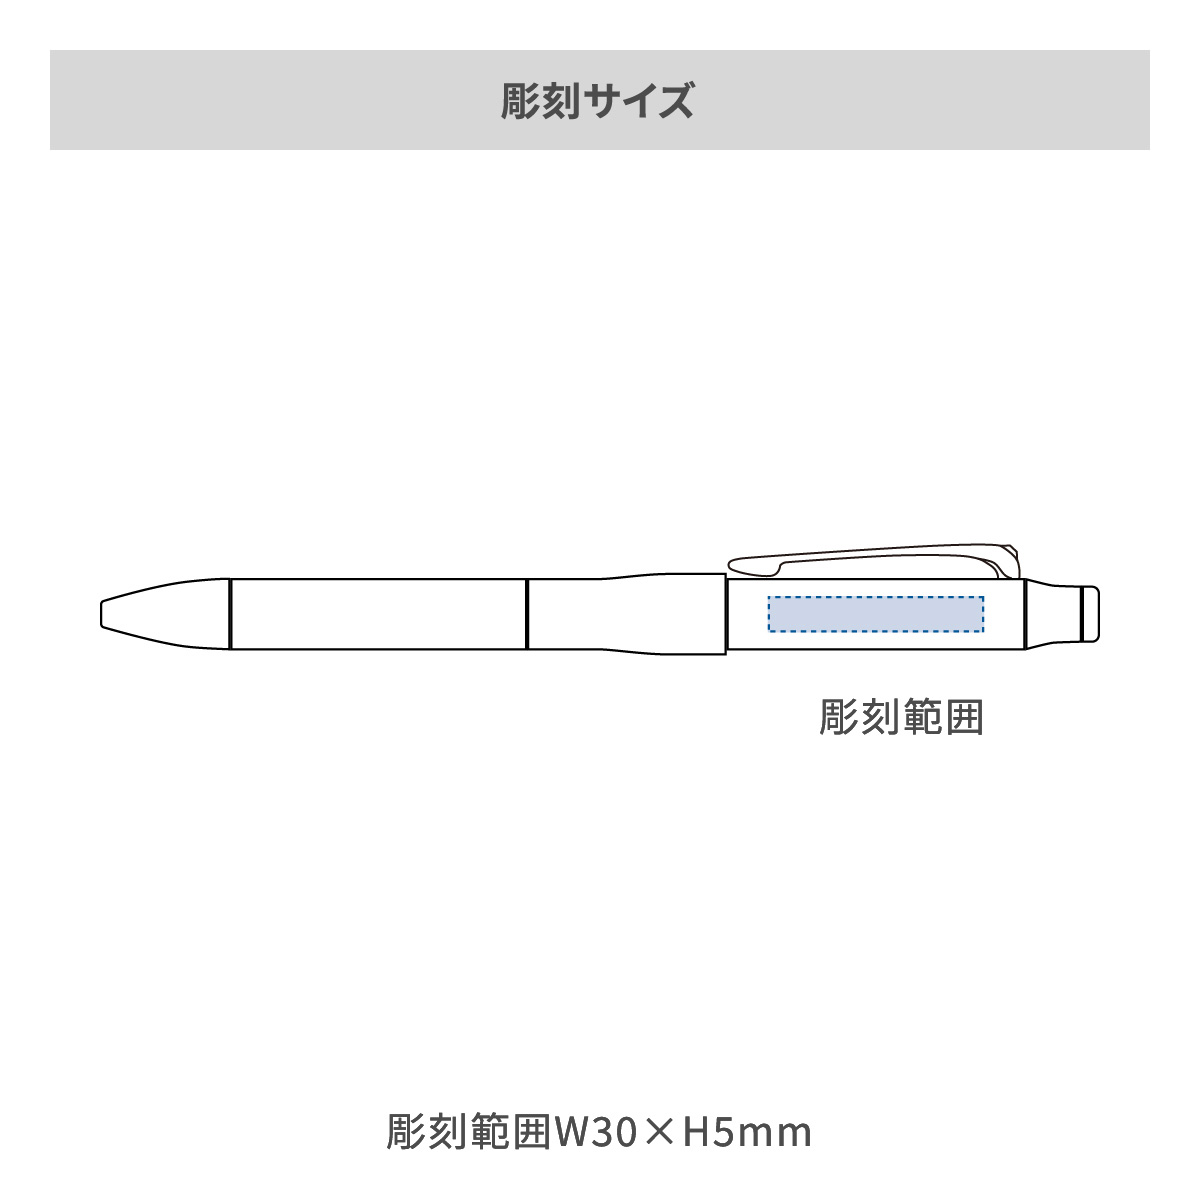 【短納期】三菱鉛筆 ジェットストリーム プライム 多機能ペン 3&1 0.5mmの名入れ範囲